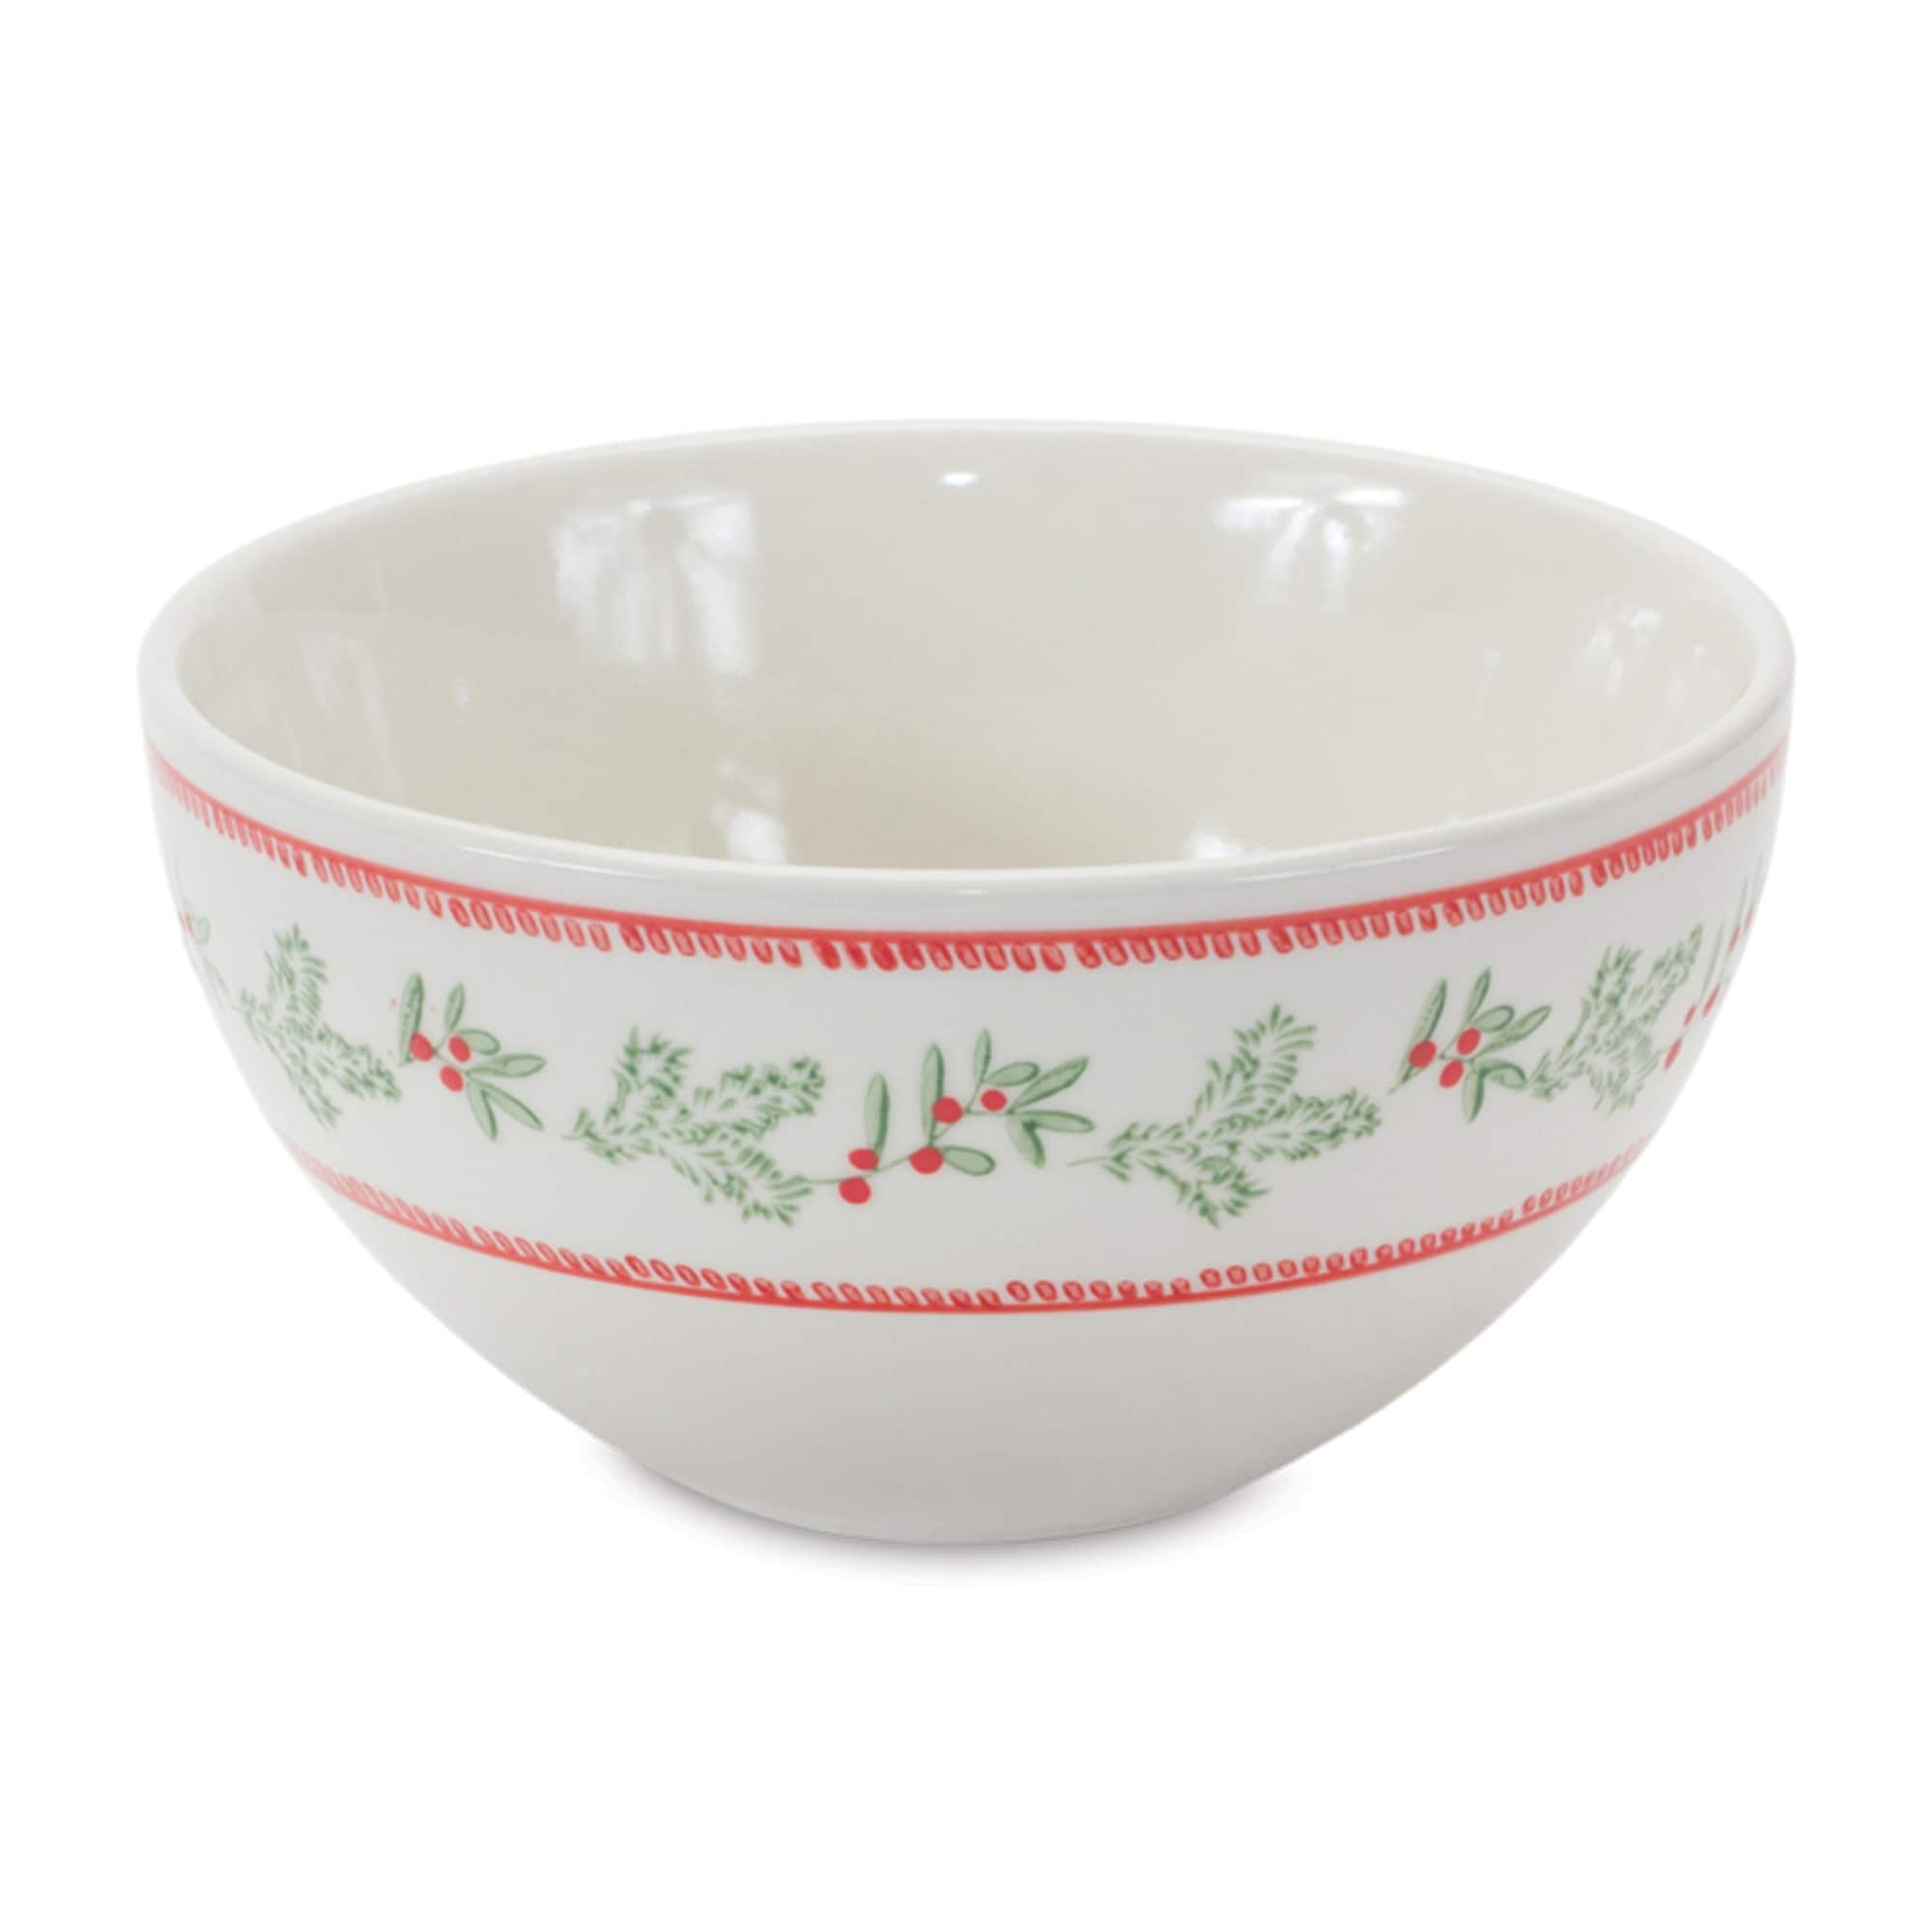 Mistletoe &#x26; Pine Holiday Stoneware Bowl Set, 3.5&#x22;, 5&#x22; &#x26; 6.75&#x22;